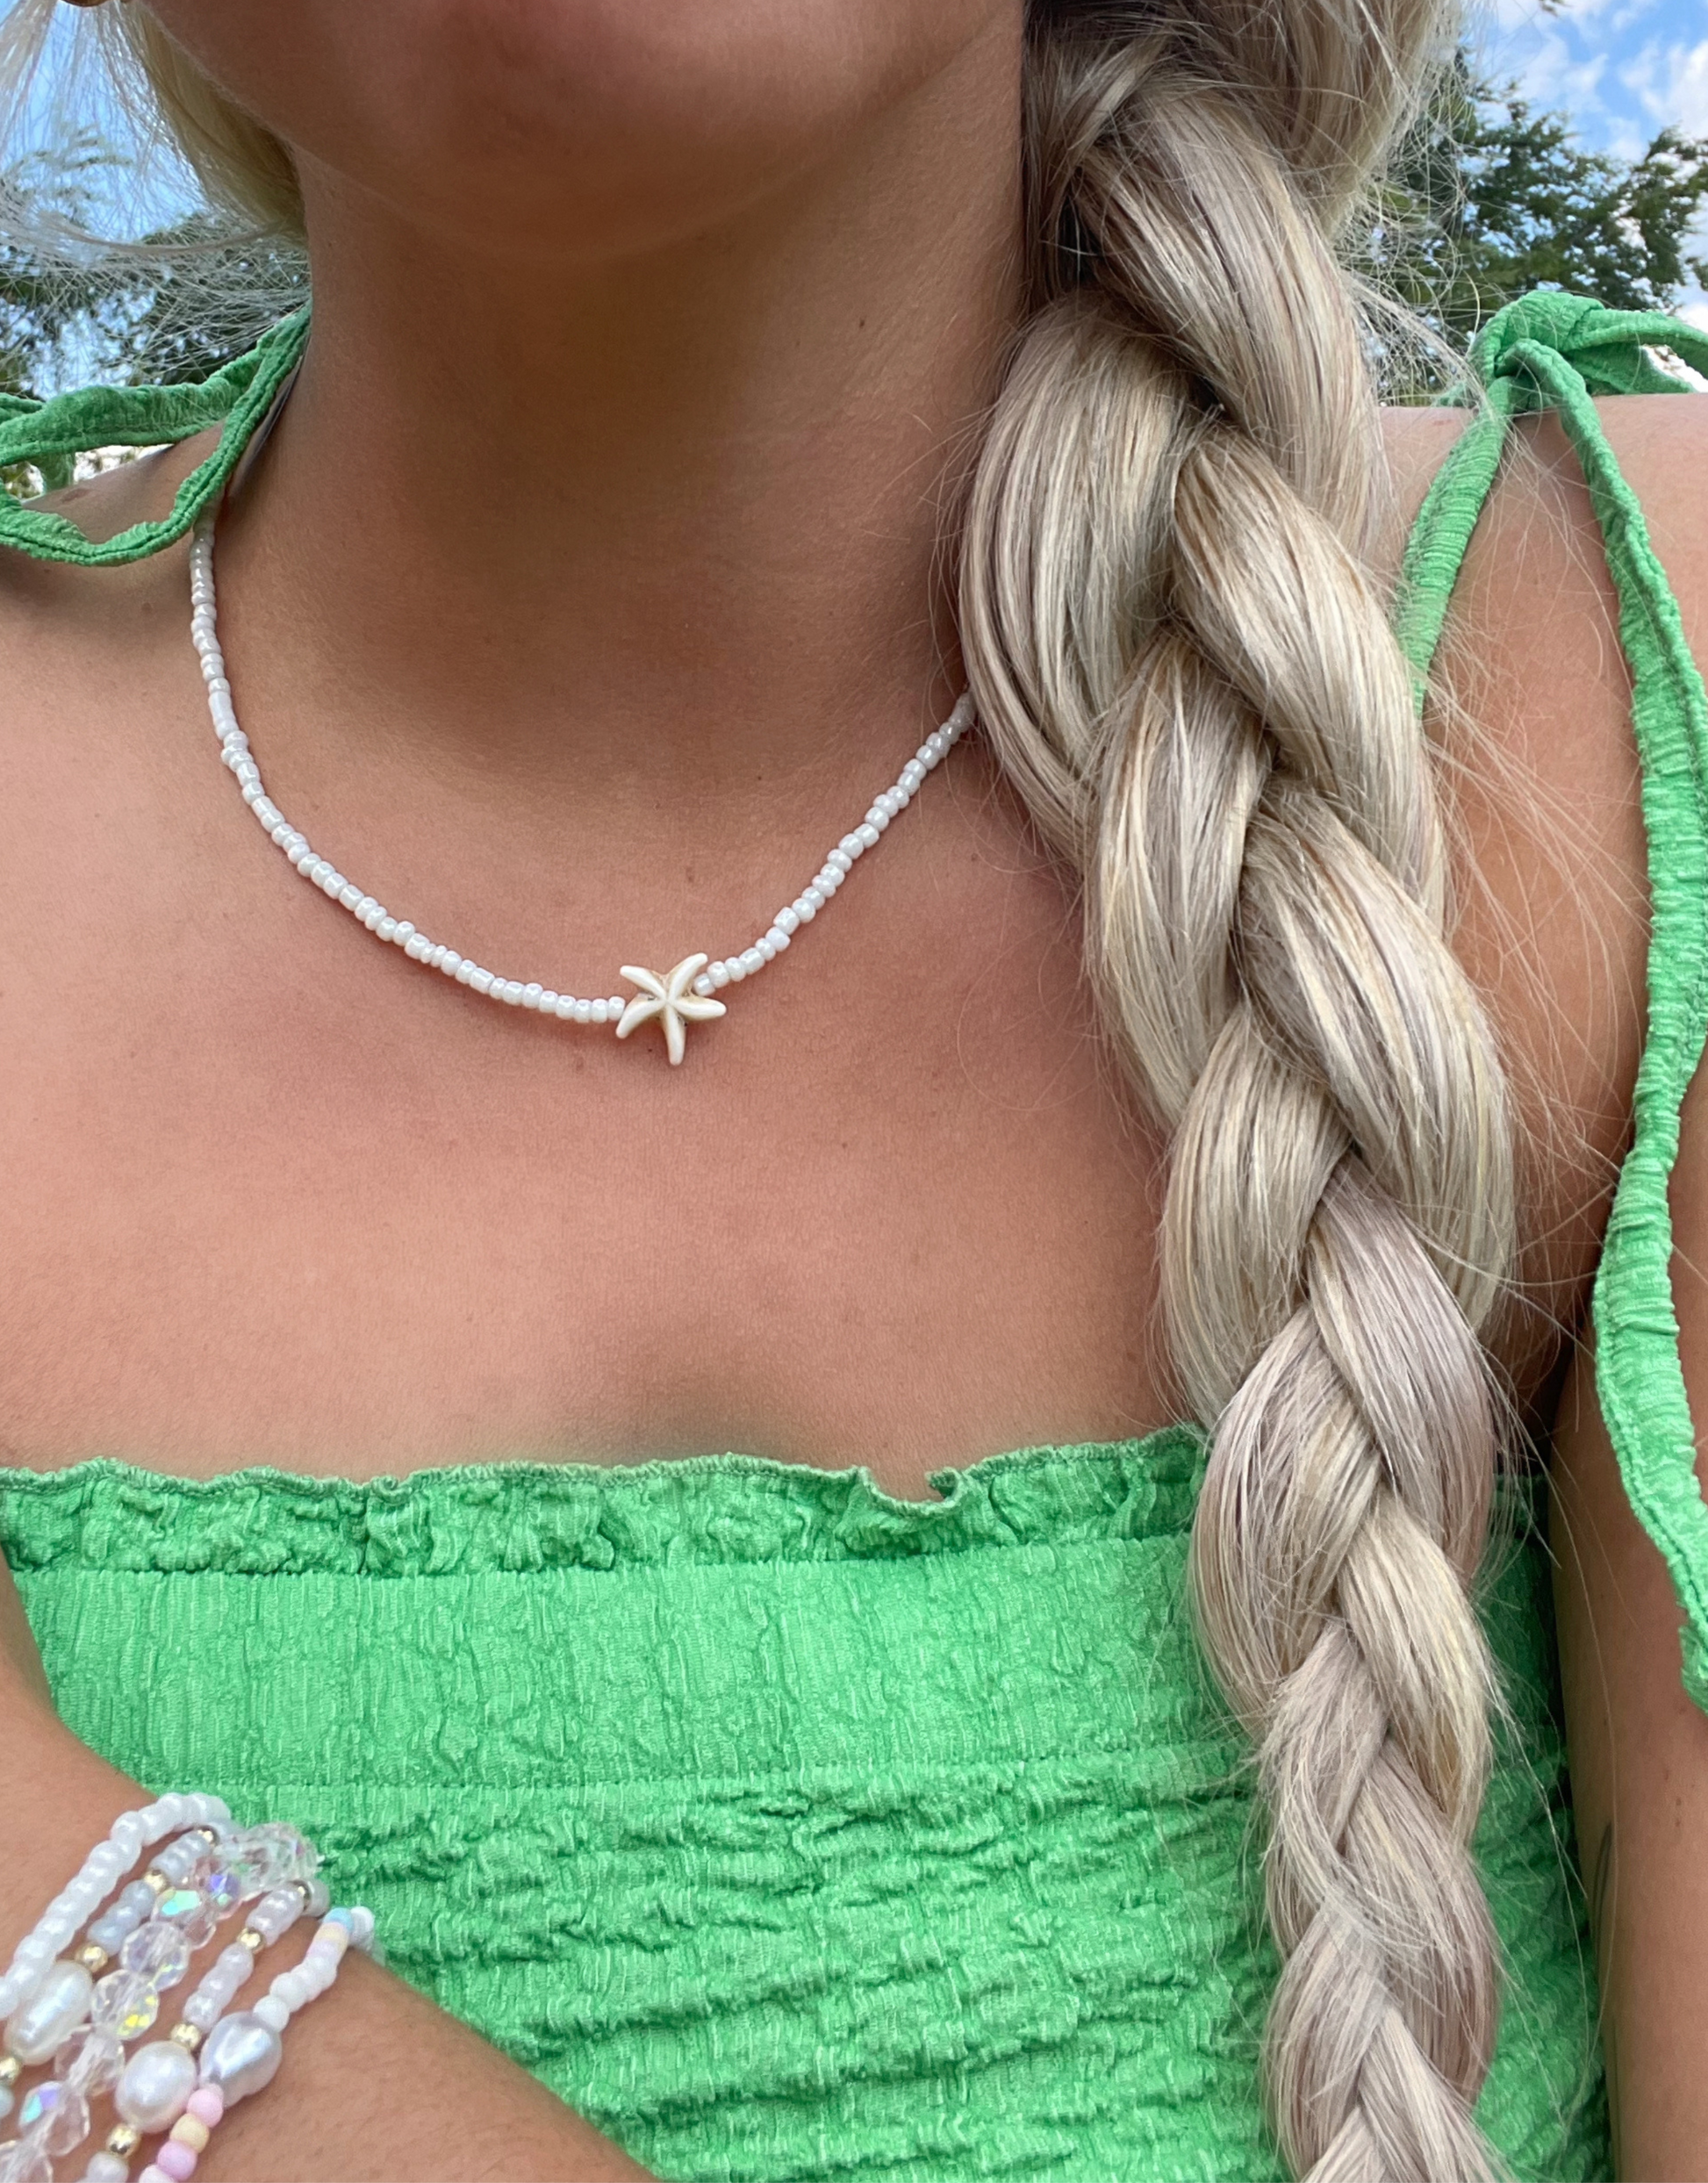 Sød halskæde fyldt med perler og søstjerne i midten.  Denne halskæde er til dig, som elsker, at pifte dit look op med unikke smykker.   Materiale: Rustfri stål, guldbelagt. Perler. 100% nikkelfri.